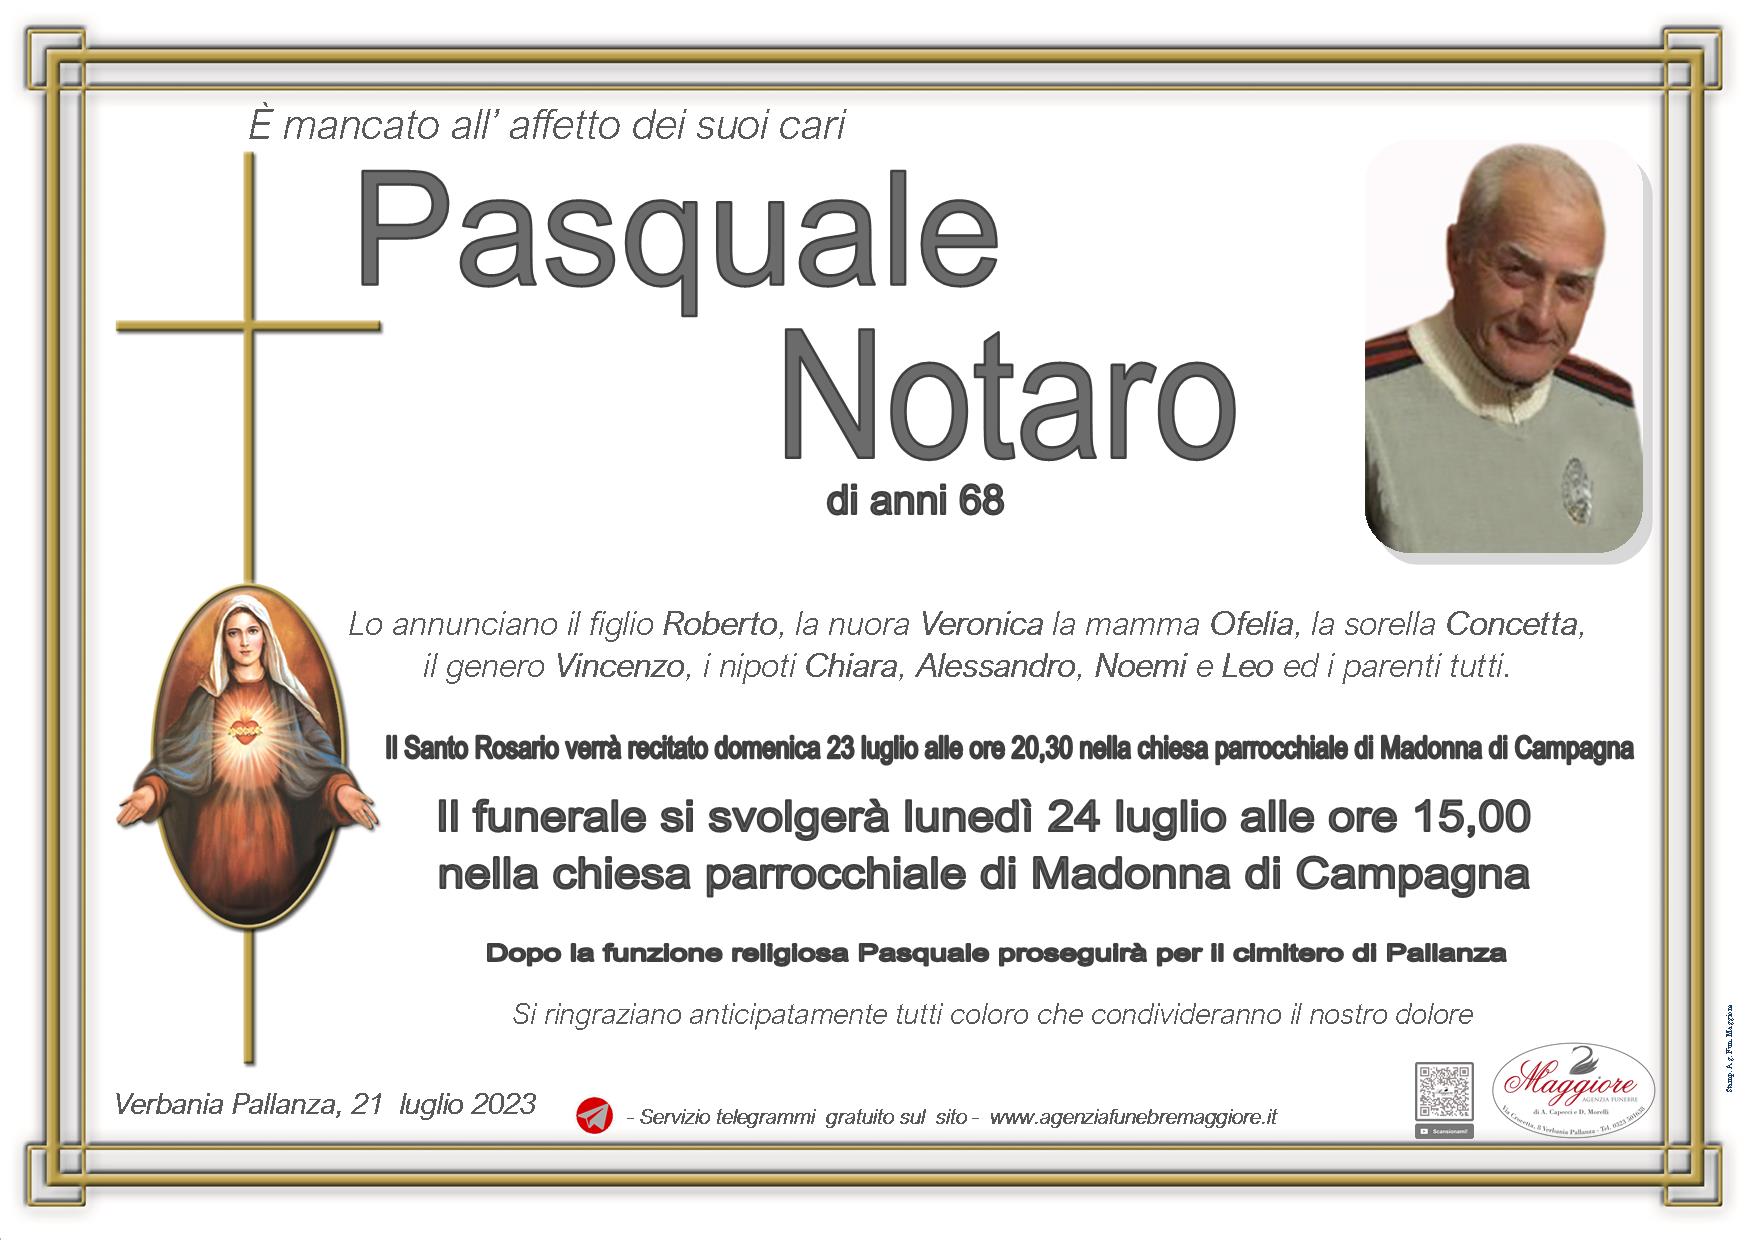 Pasquale Notaro